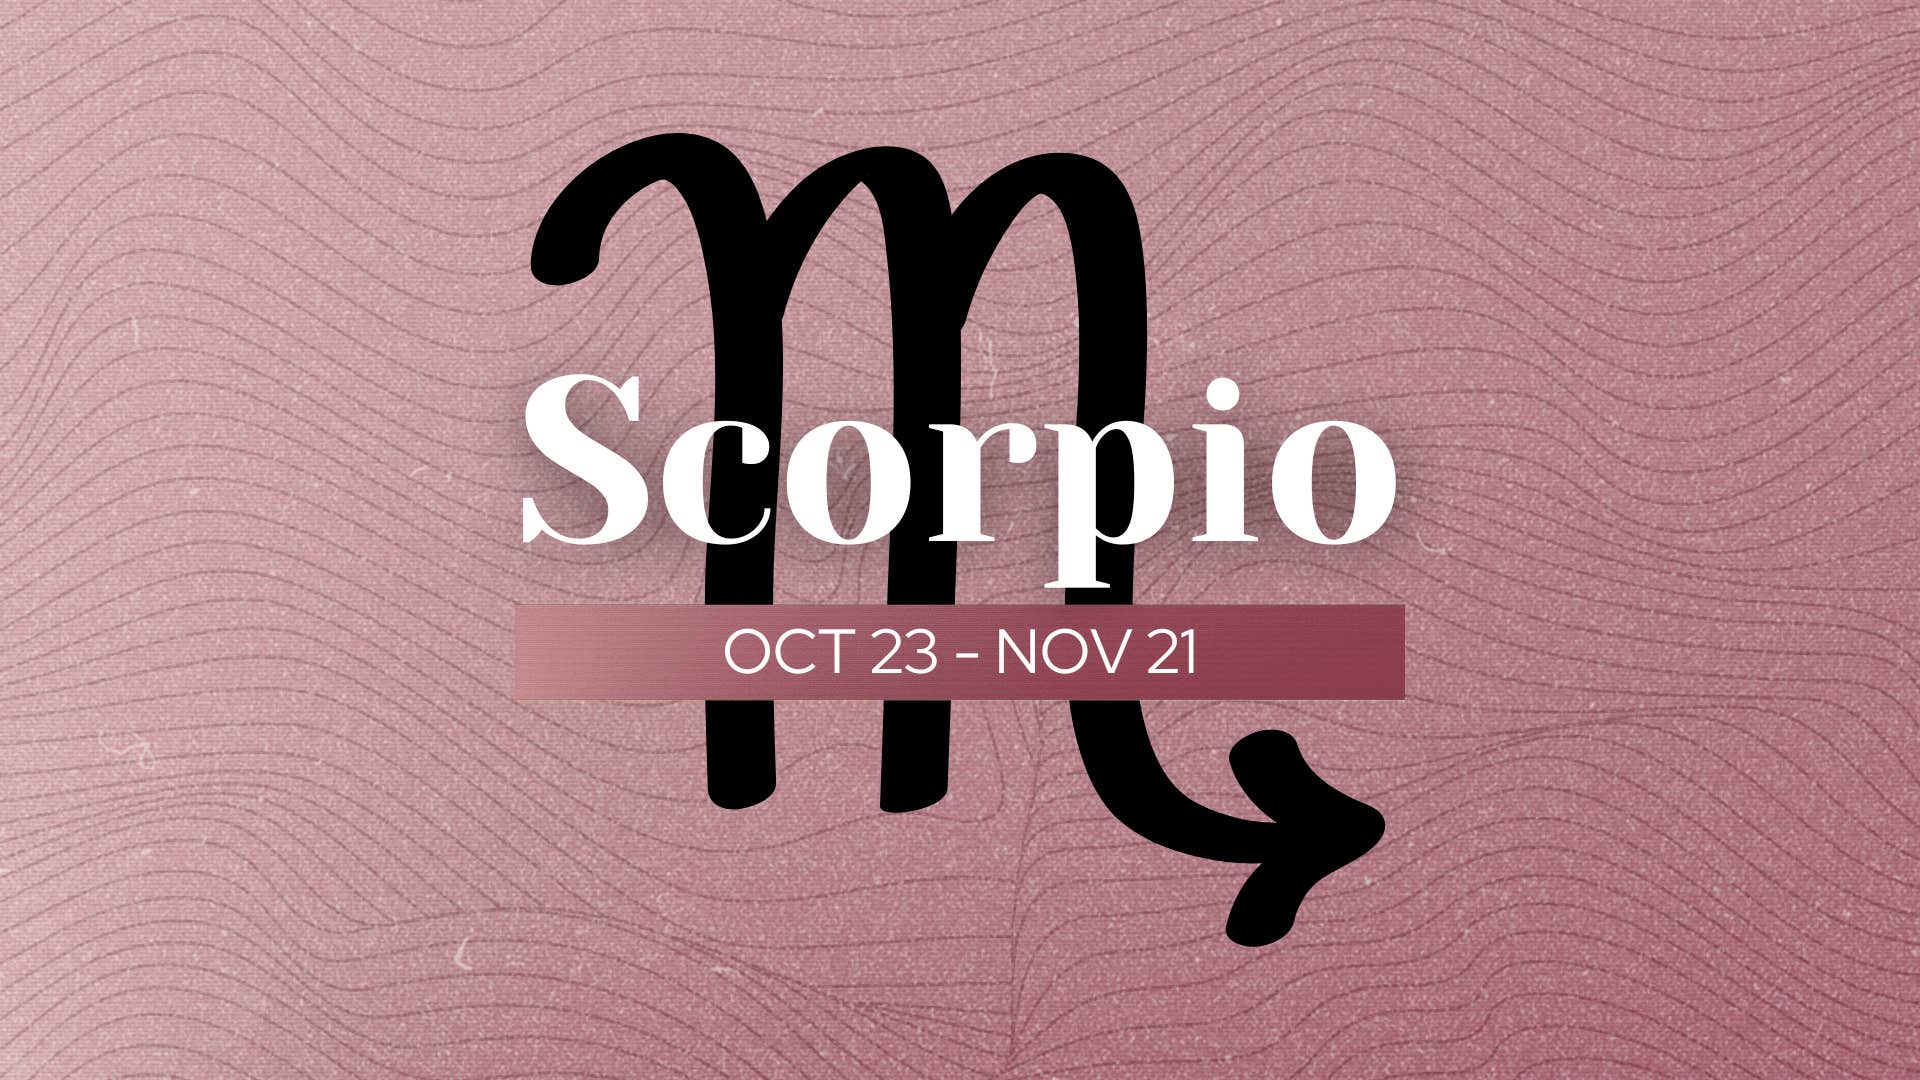 what makes scorpio uniquely special